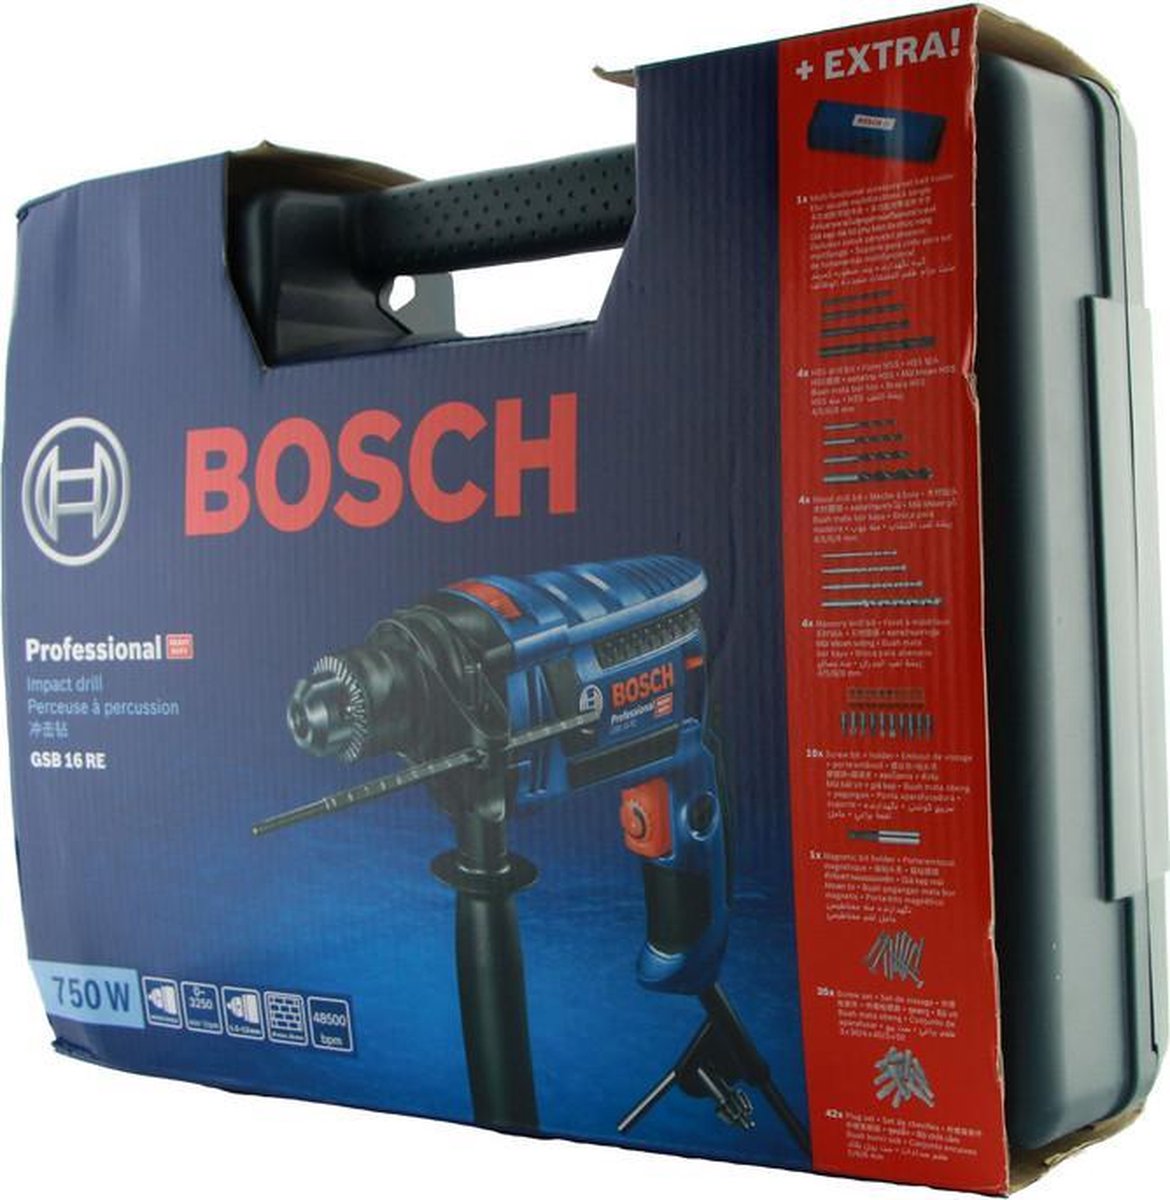 Perceuse à percussion Bosch Bleu GSB16RE 750W